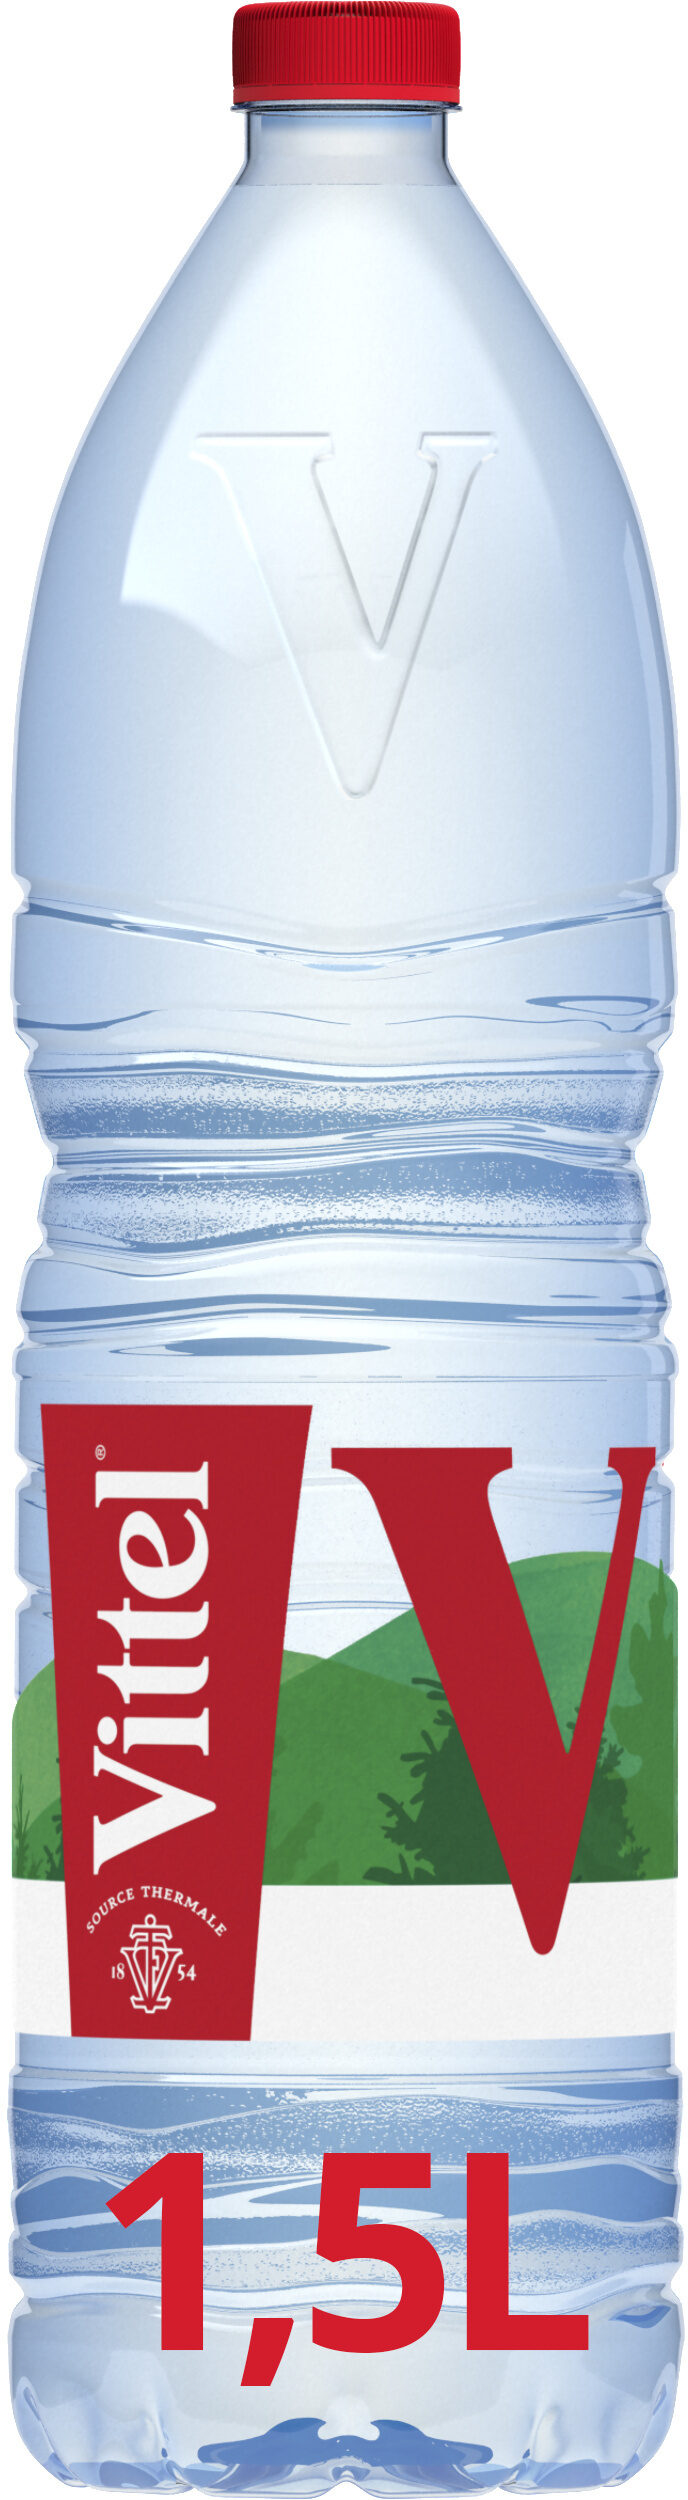 VITTEL eau minérale naturelle 1,5L - Product - fr